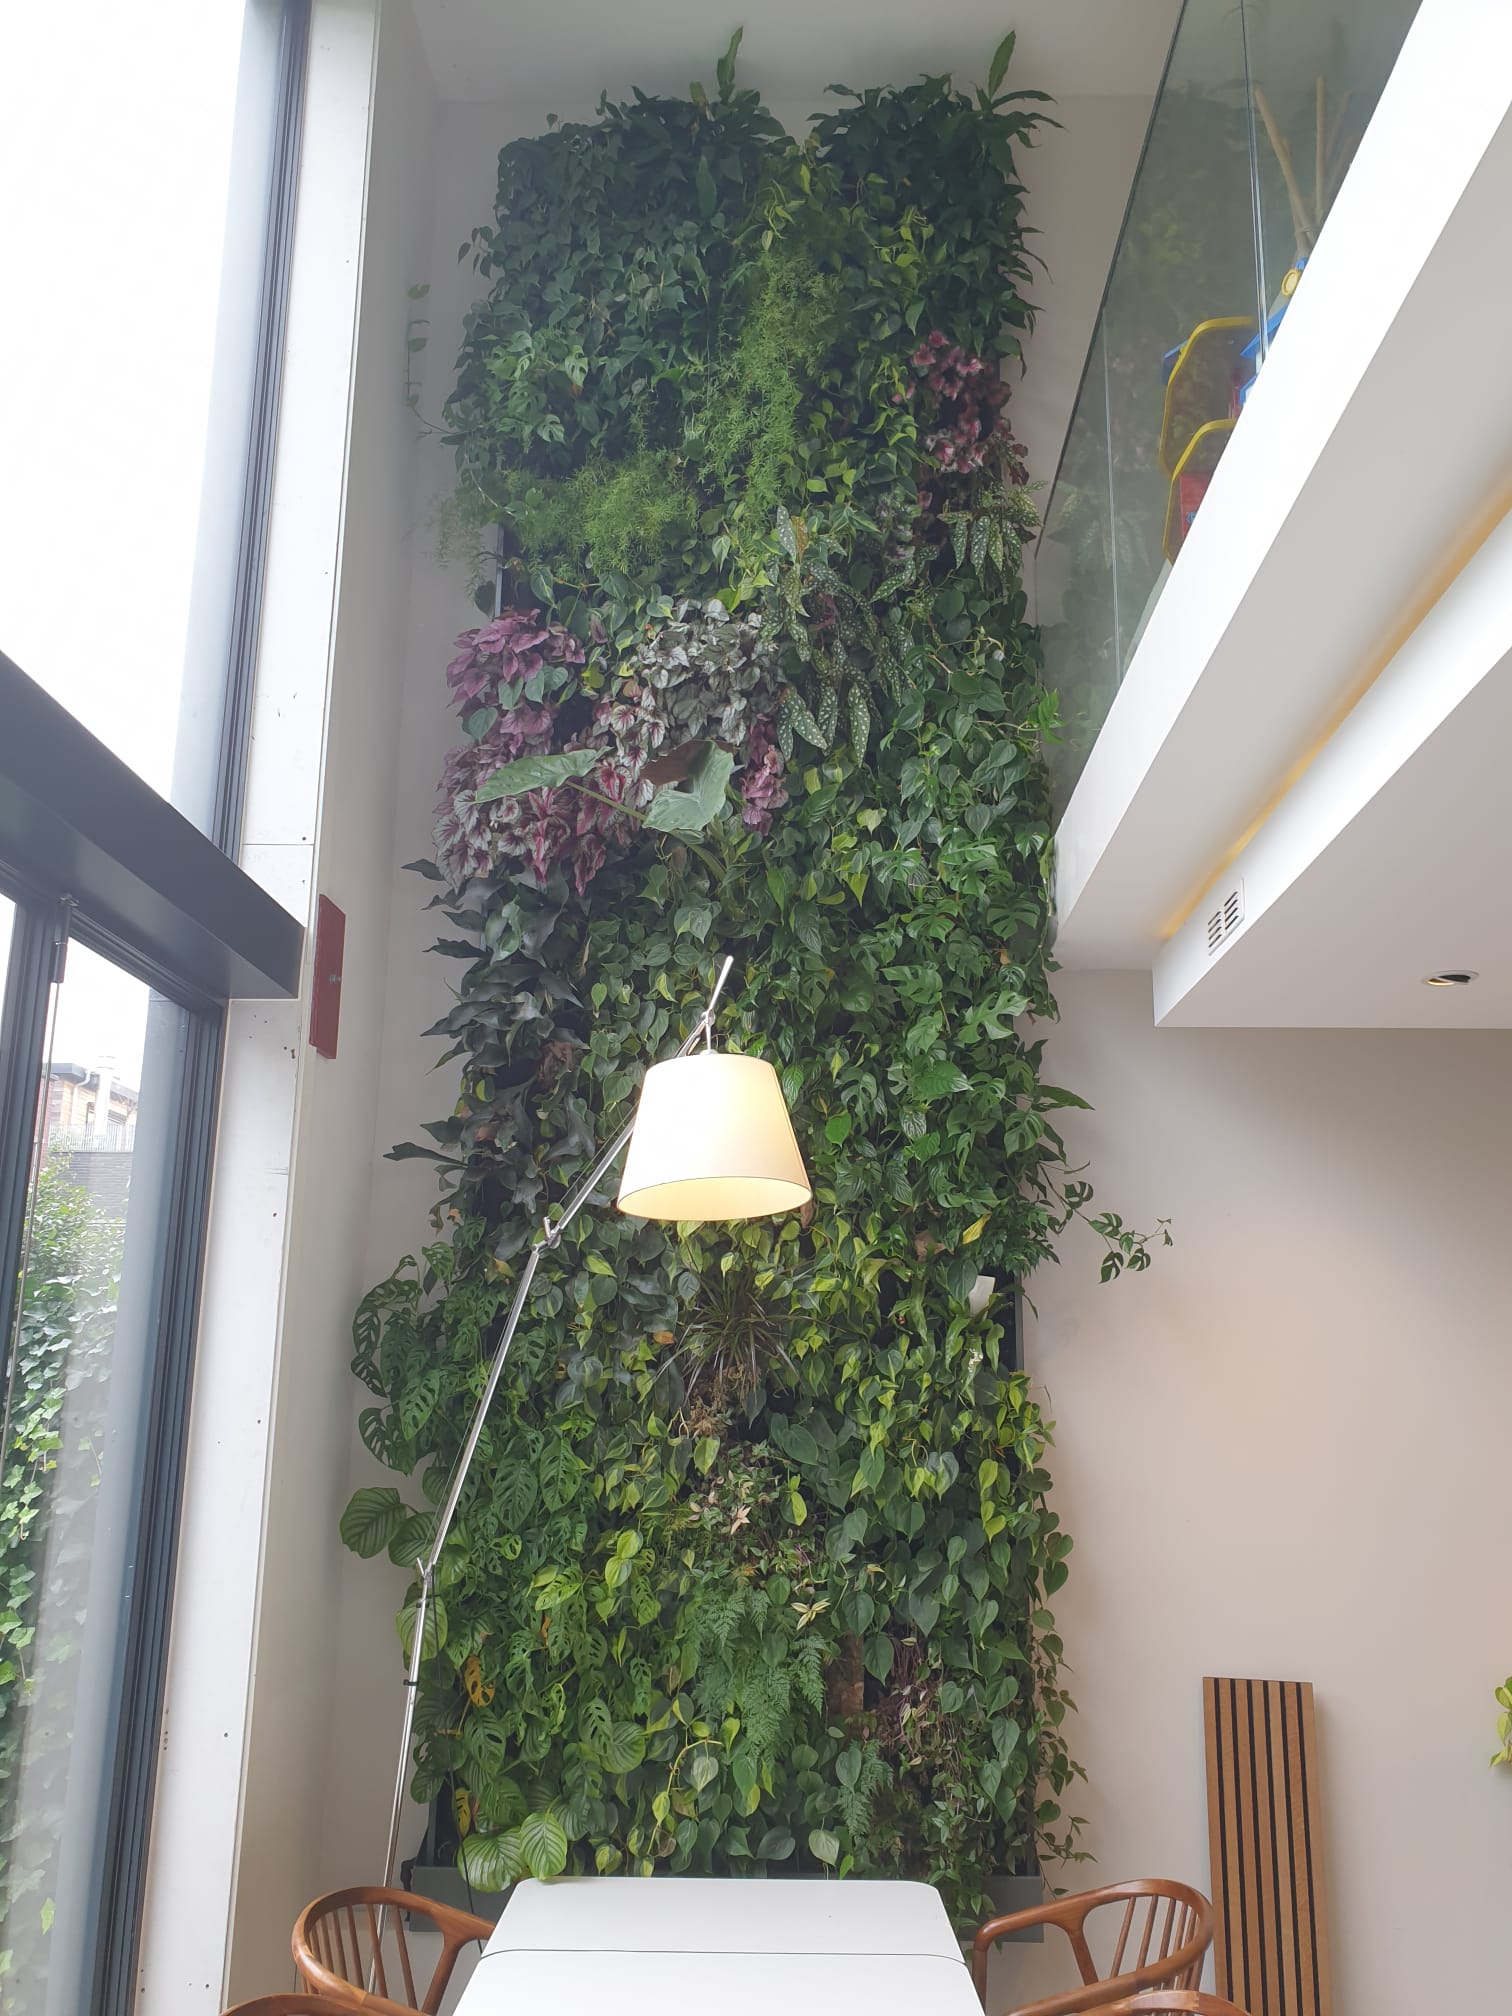 Mevrouw paus peddelen Deze levende plantenwand zorgt voor een prachtige groene keuken! - Vertical  Gardens